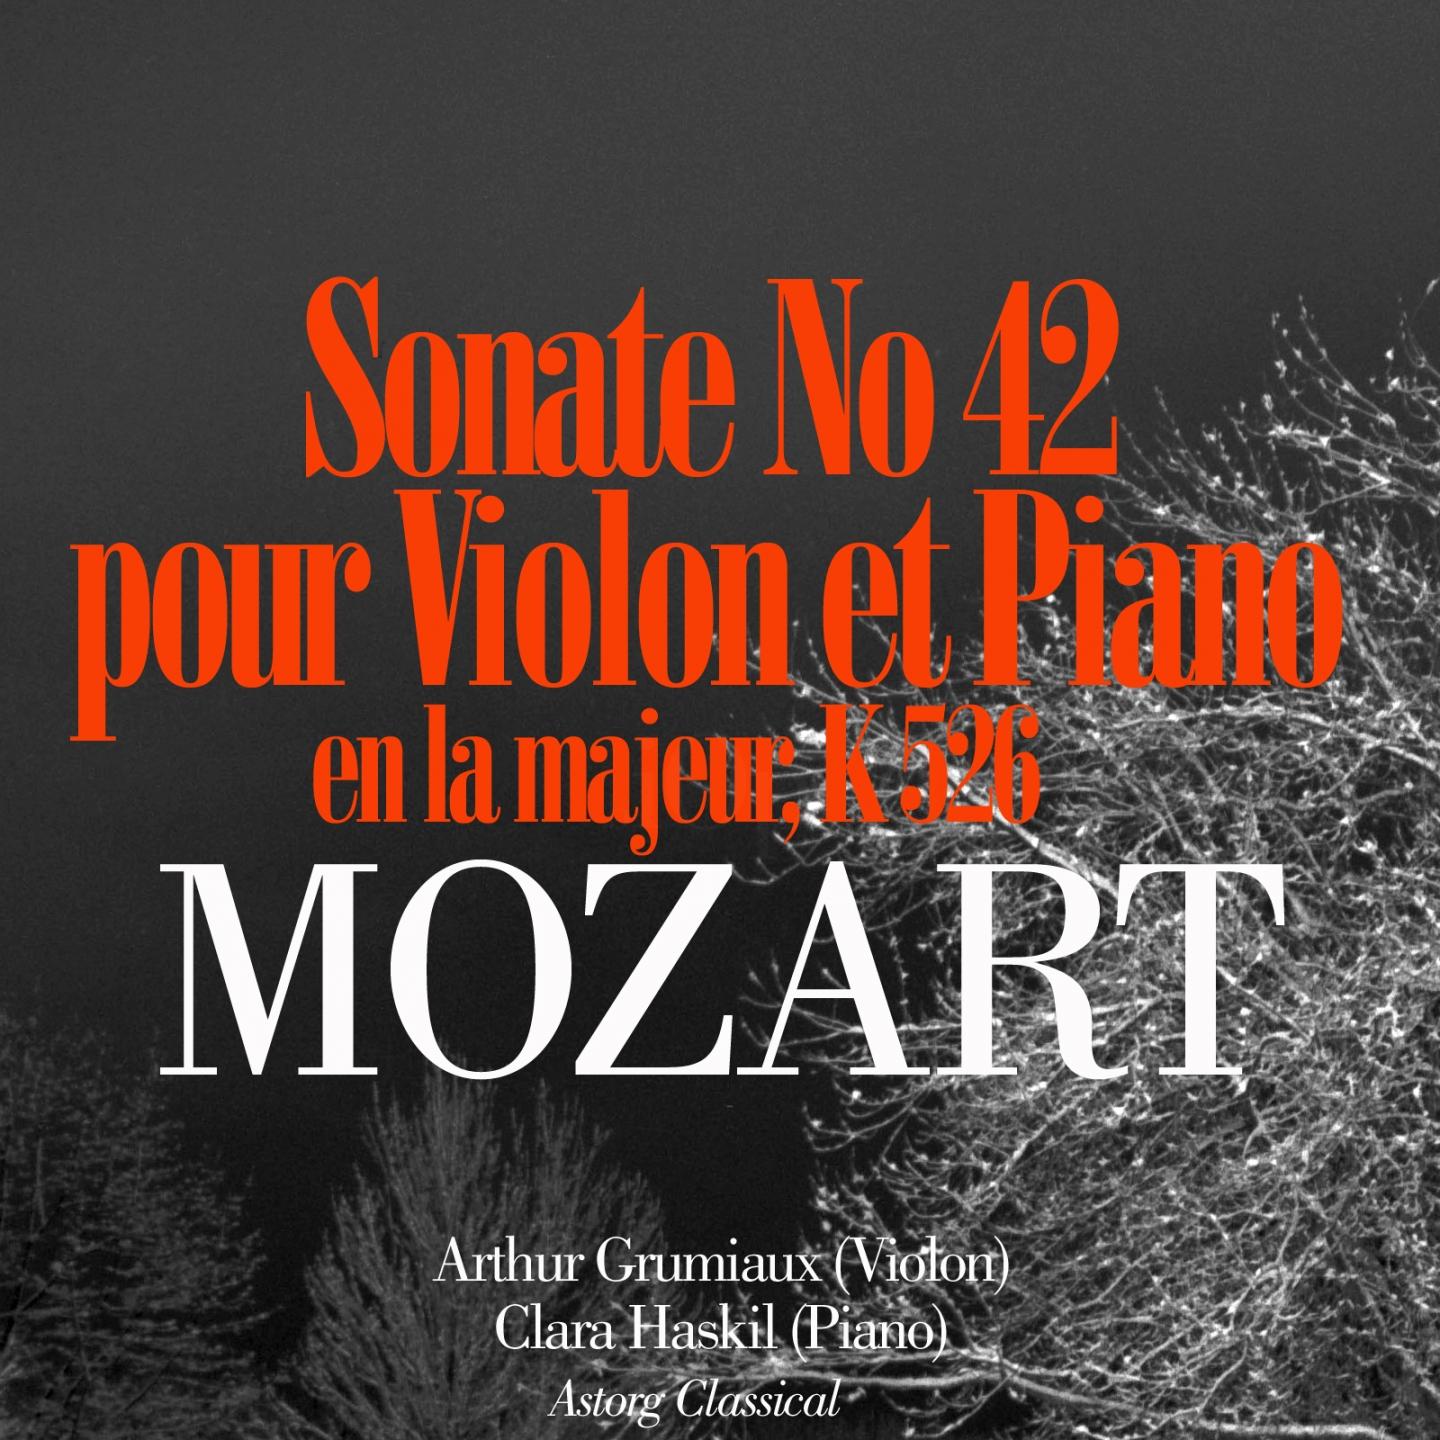 Mozart: Sonate No. 42 en la majeur pour violon et piano, K. 526专辑